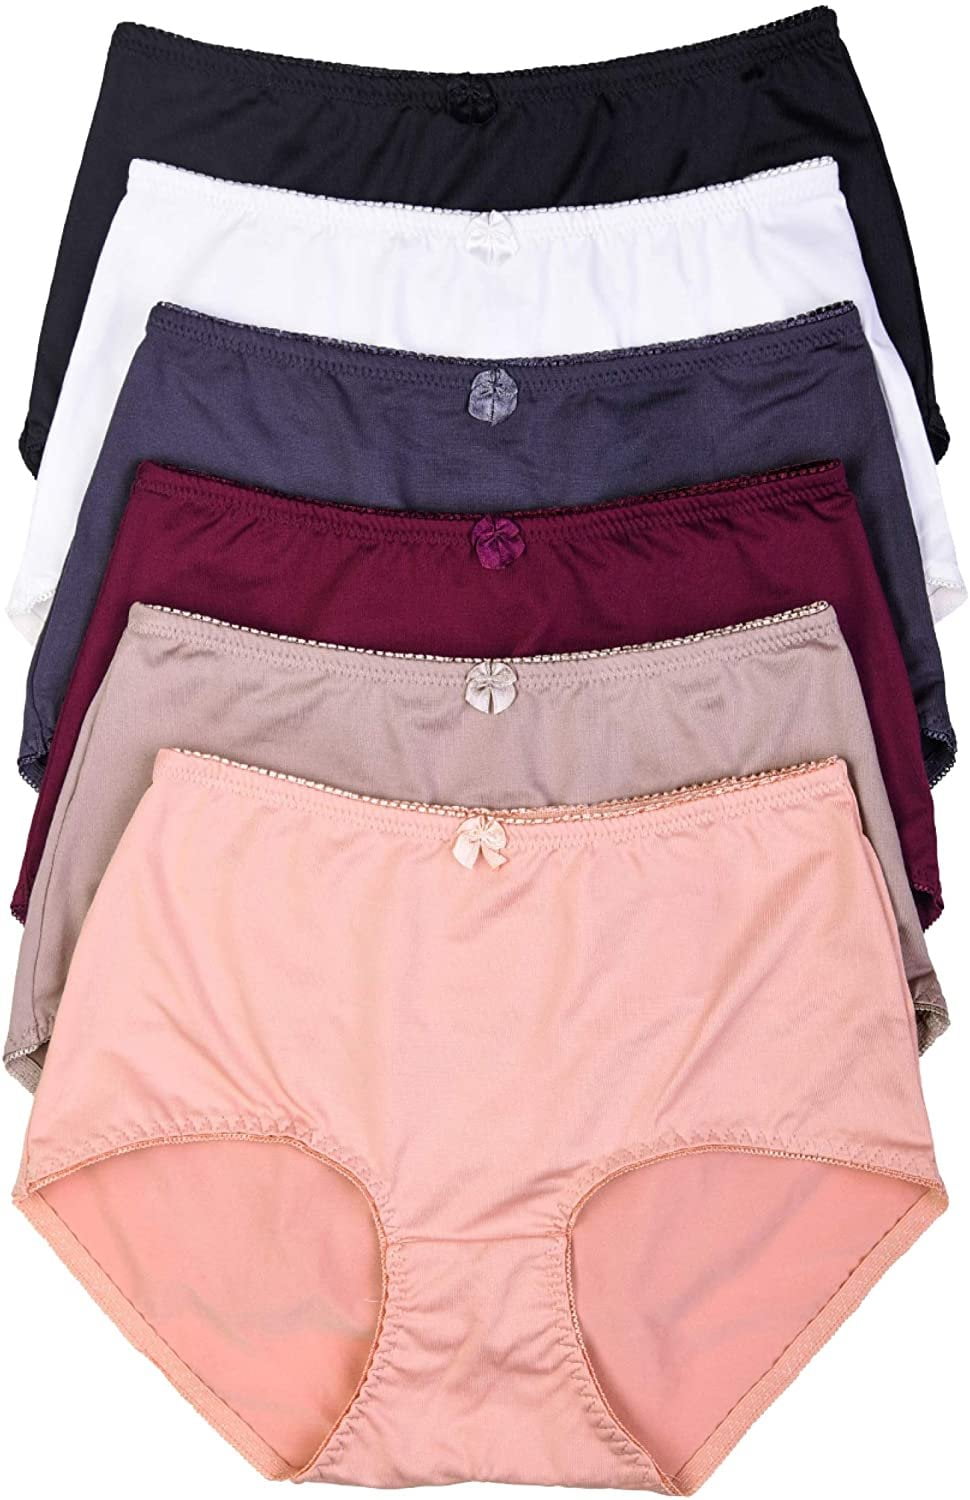 6 Womens Downtown Underwear Panties Full Lot Underwear #599 S M L XL 2X 3X 4X 